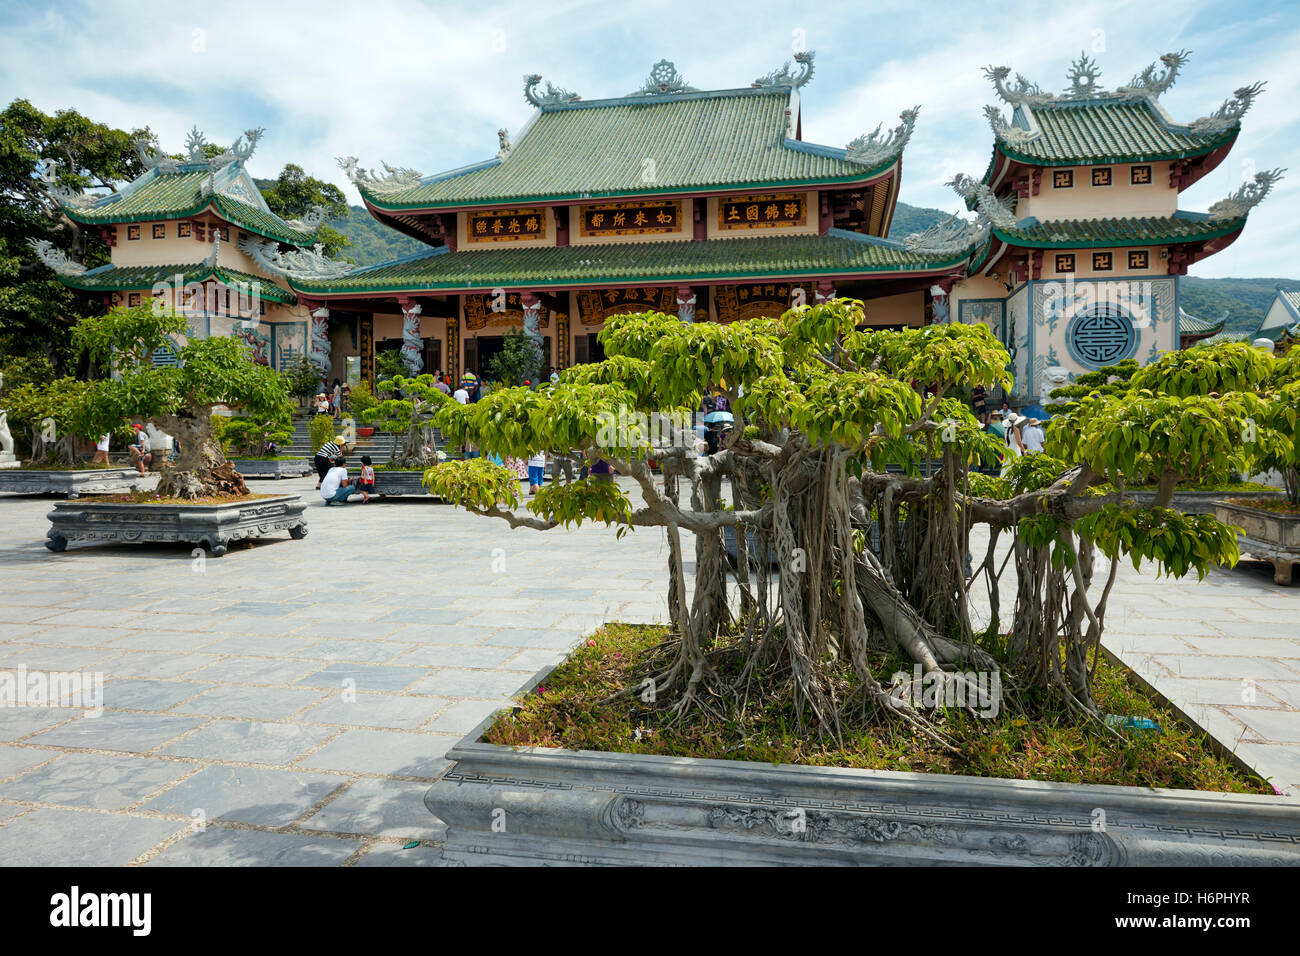 Bonsai garden at Linh Ung Pagoda, Da Nang, Vietnam. Stock Photo